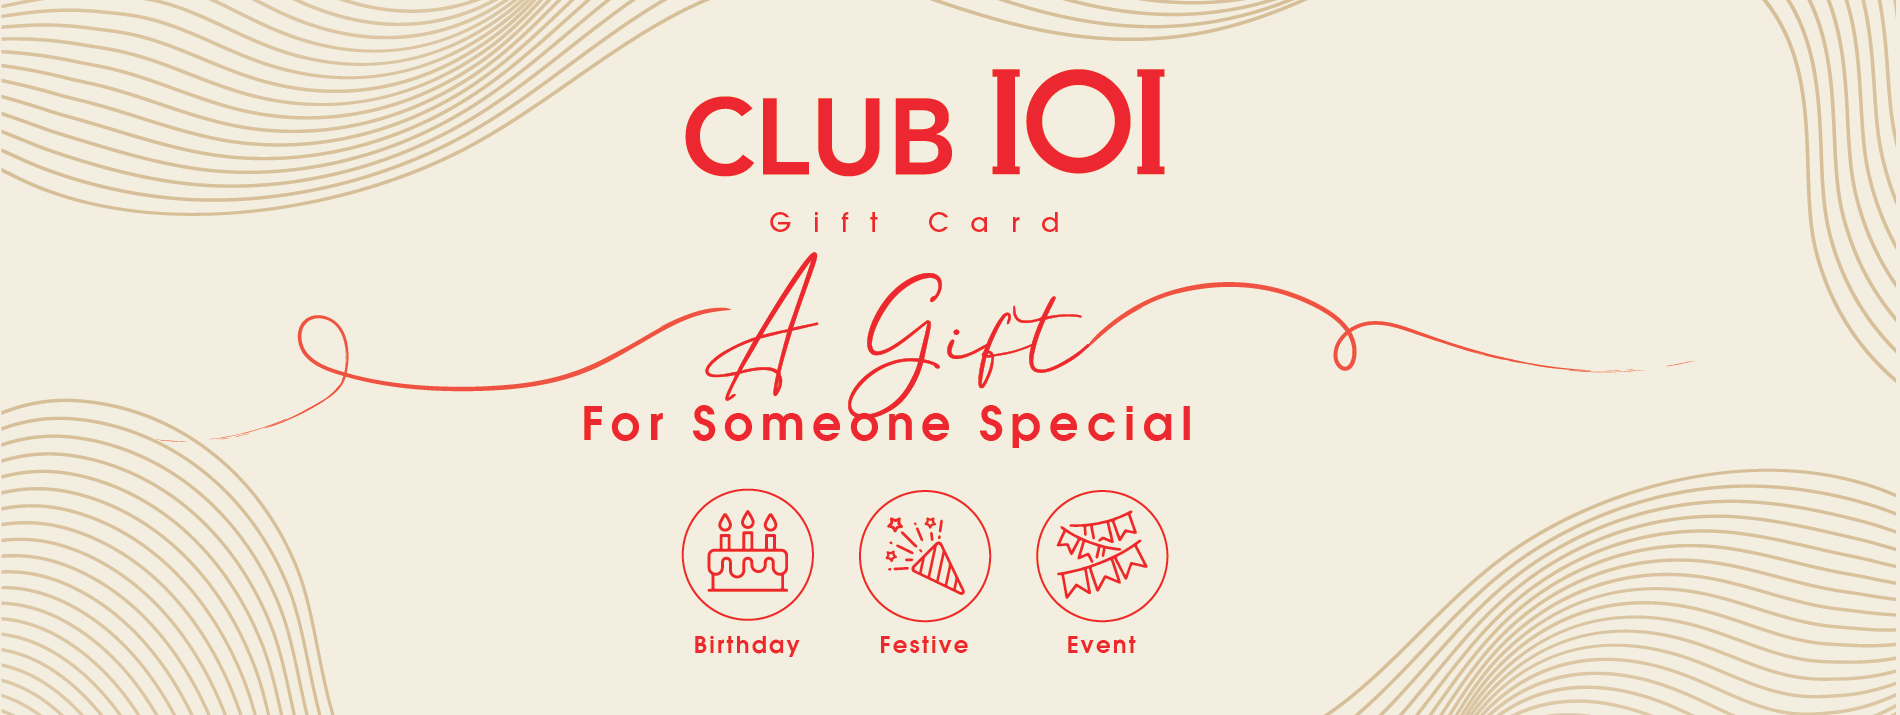 CLUB IOI GIFT CARD 2